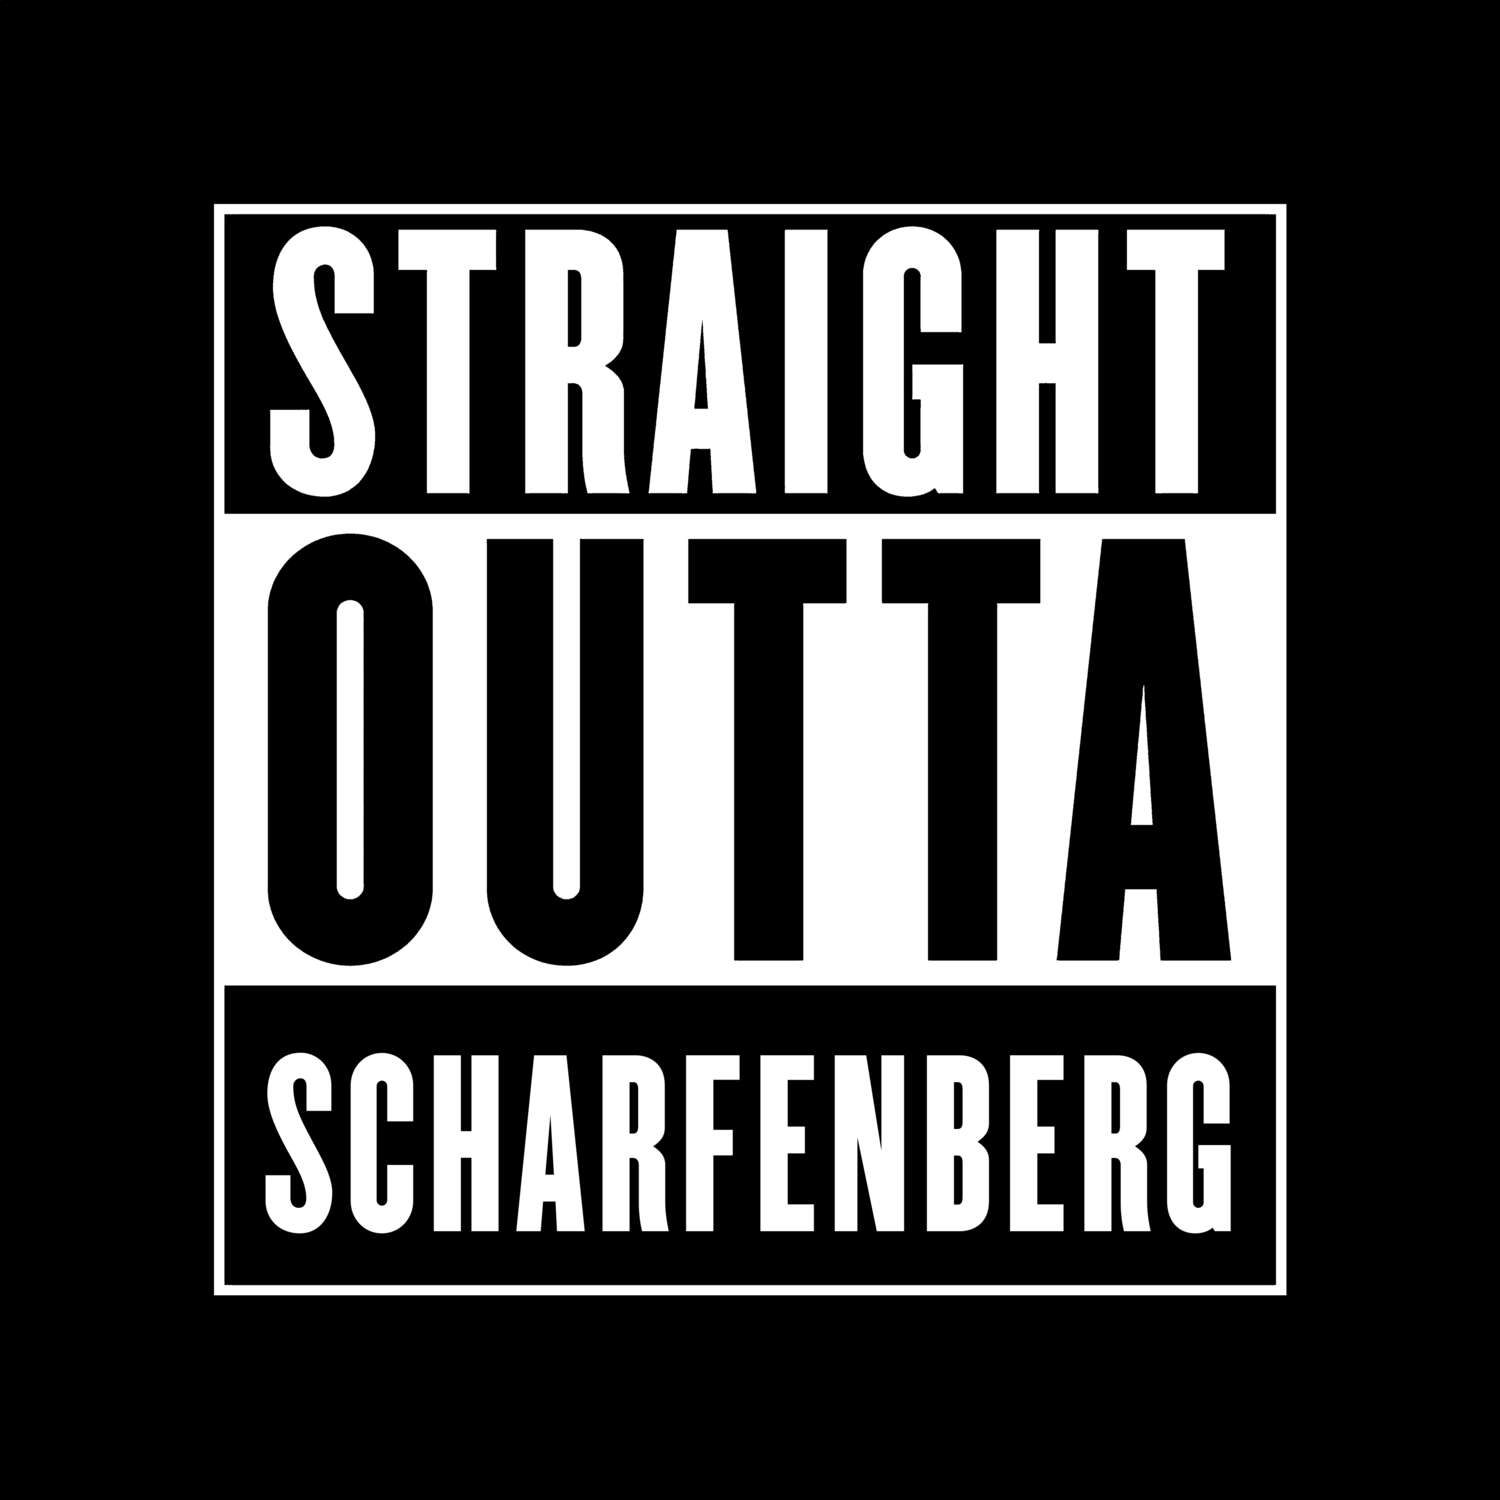 Scharfenberg T-Shirt »Straight Outta«